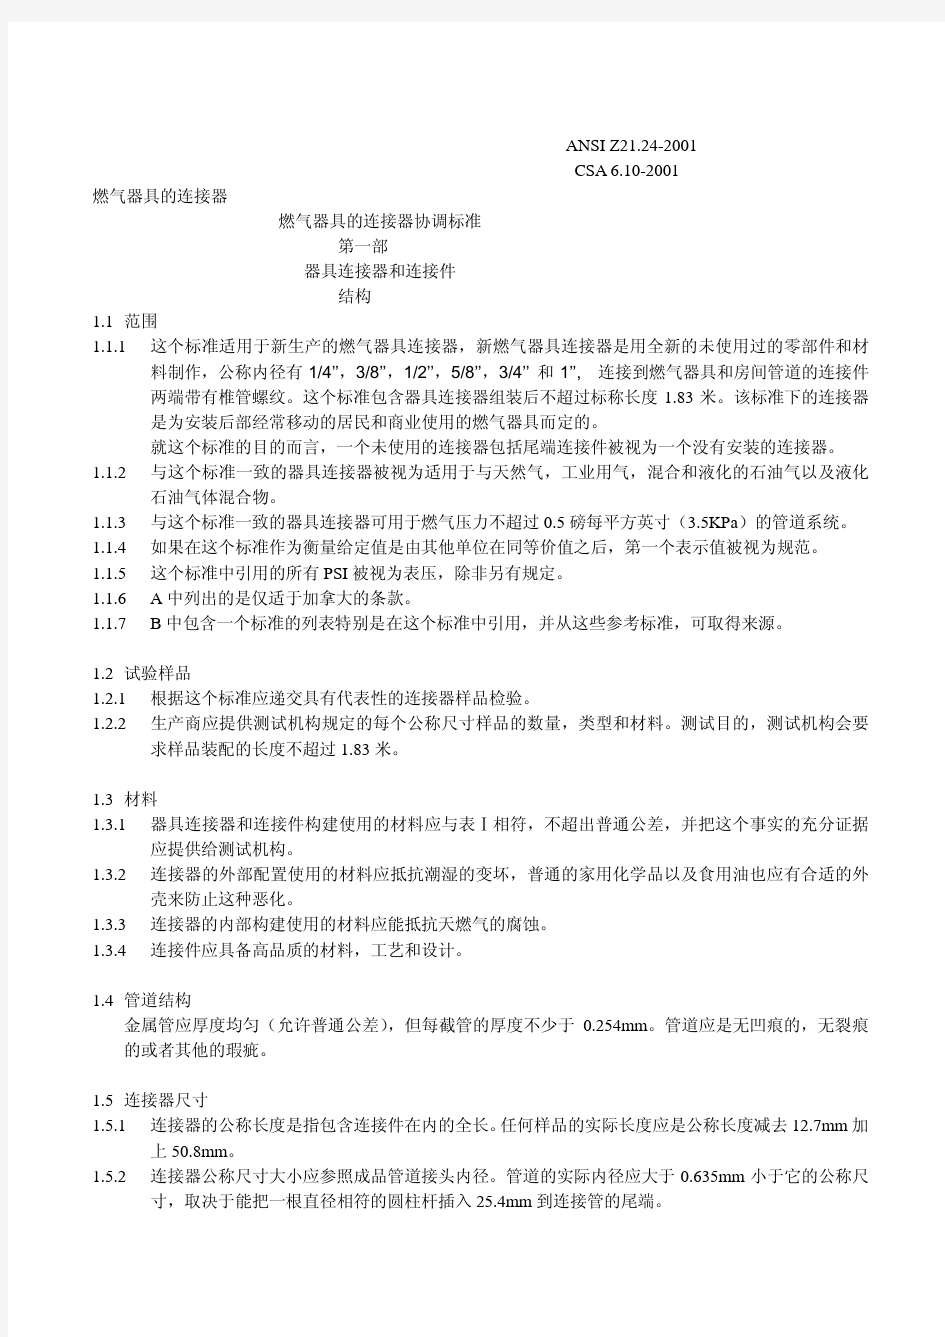 ANSI Z21.24 CSA 6.10-2001燃气器具连接器标准(中文)